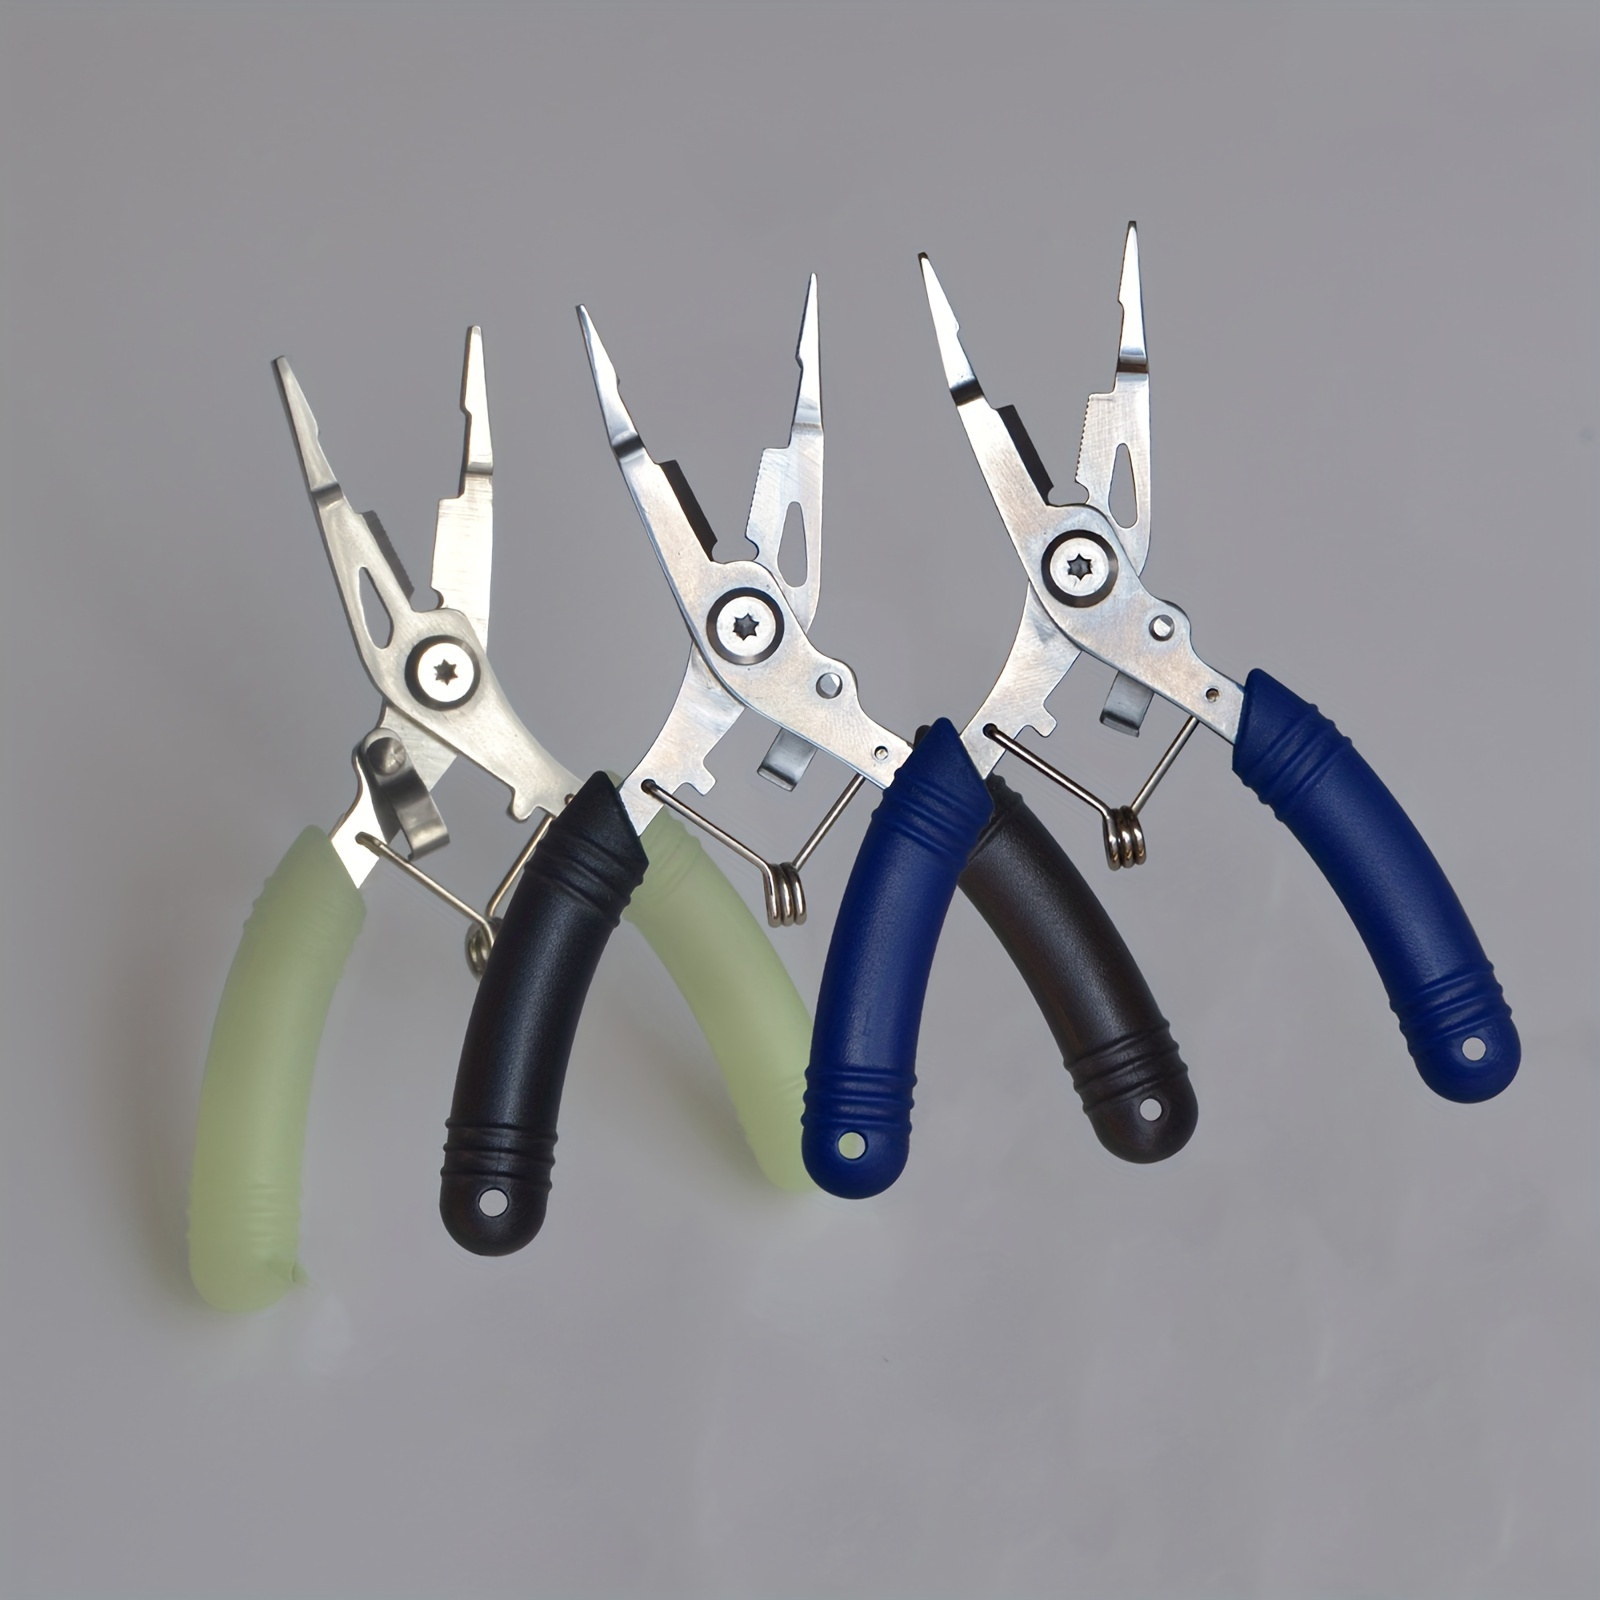 Swiss+Tech 3PC Fishing Tool Kit Fish Gripper Pliers Line Scissors